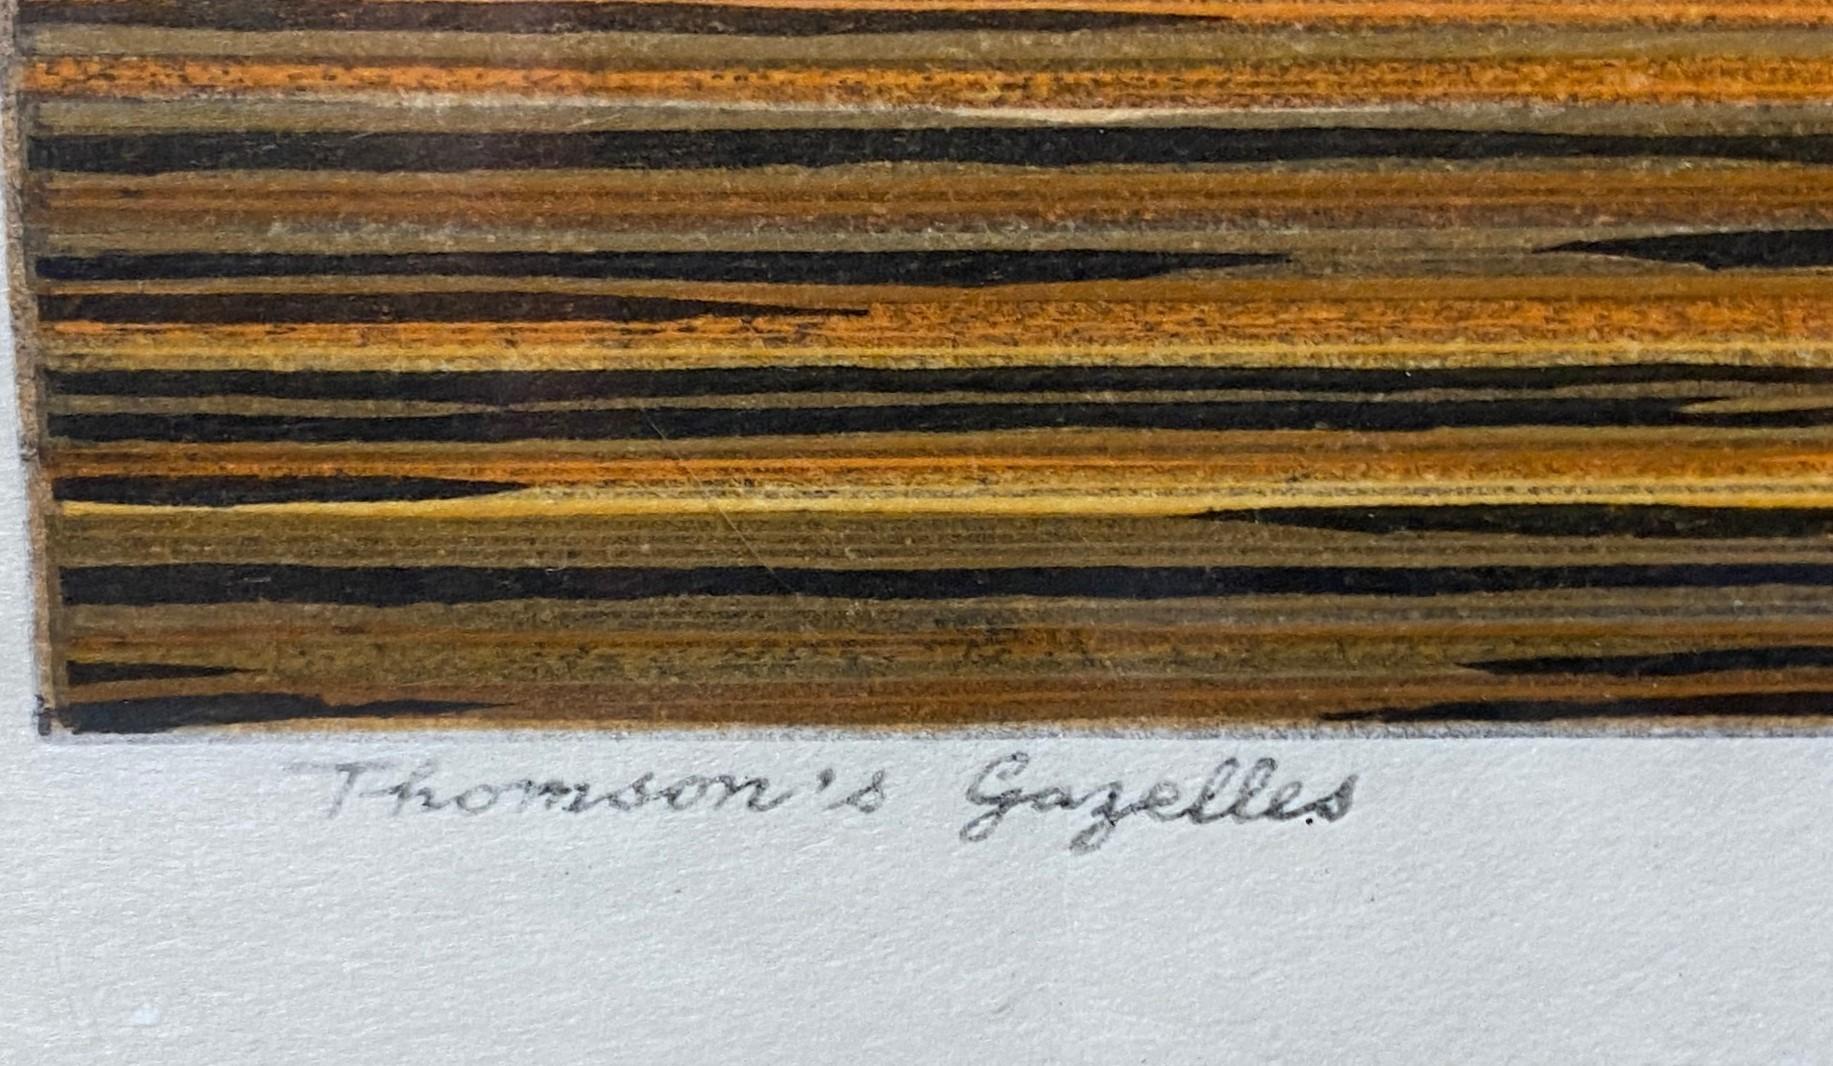 Toshi Yoshida Signed Limited Edition Japanese Woodblock Print Thomson's Gazelles 5